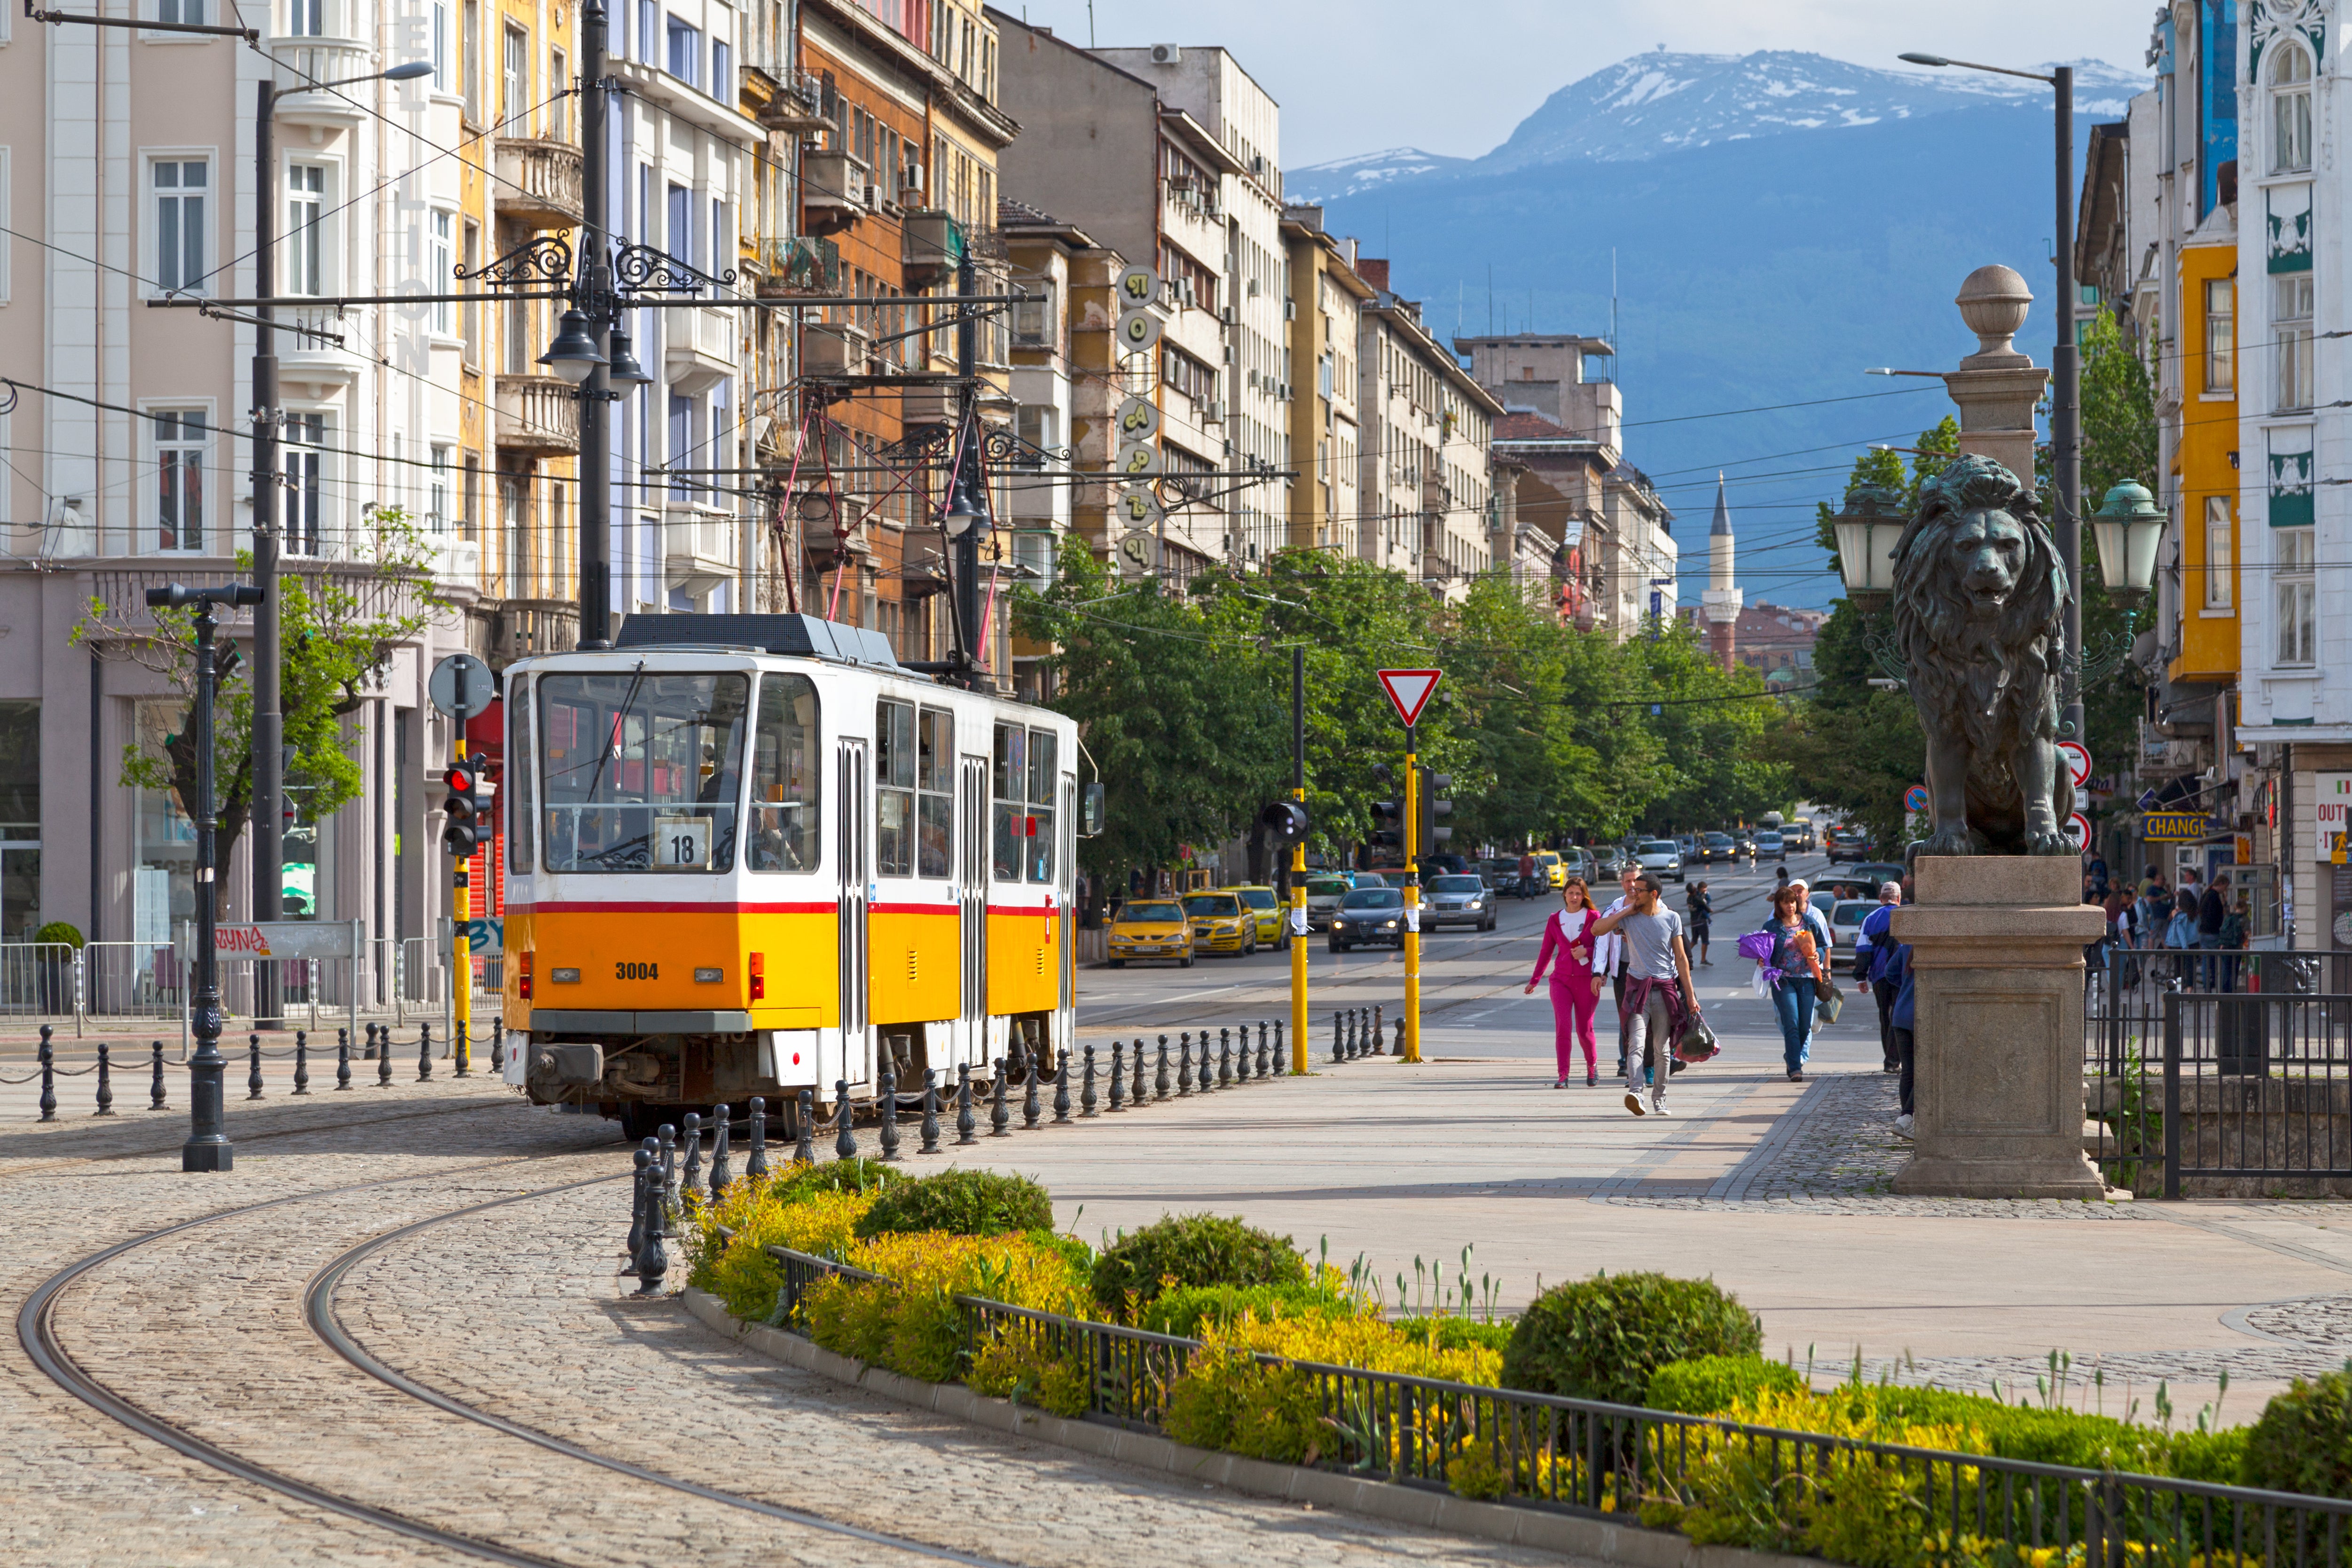 Travel by tram through Sofia